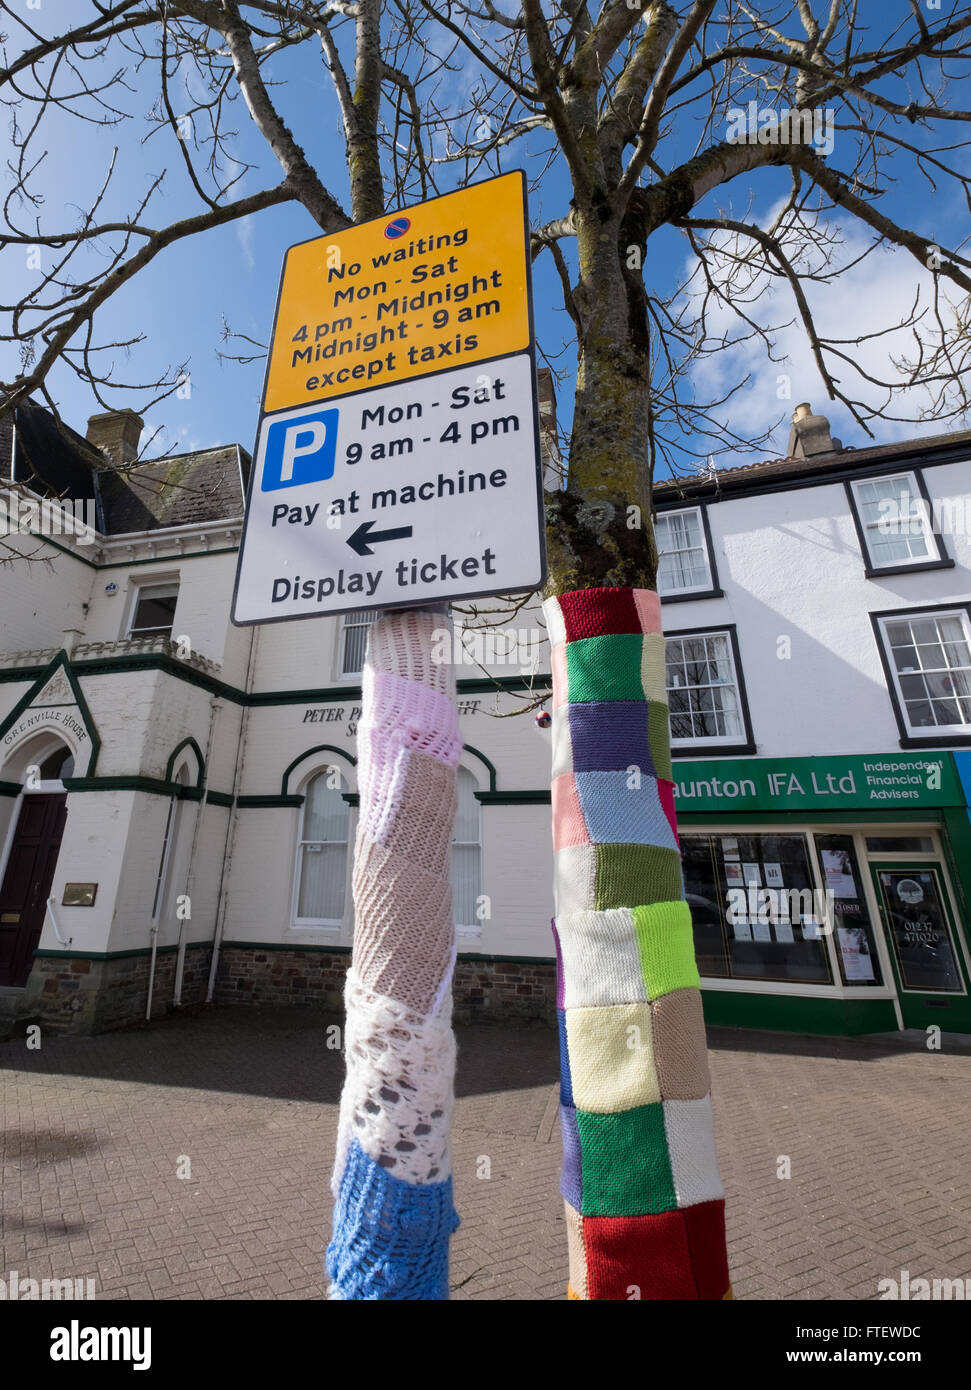 Yarn Bombing knitting graffiti in Bideford Devon, UK Stock Photo